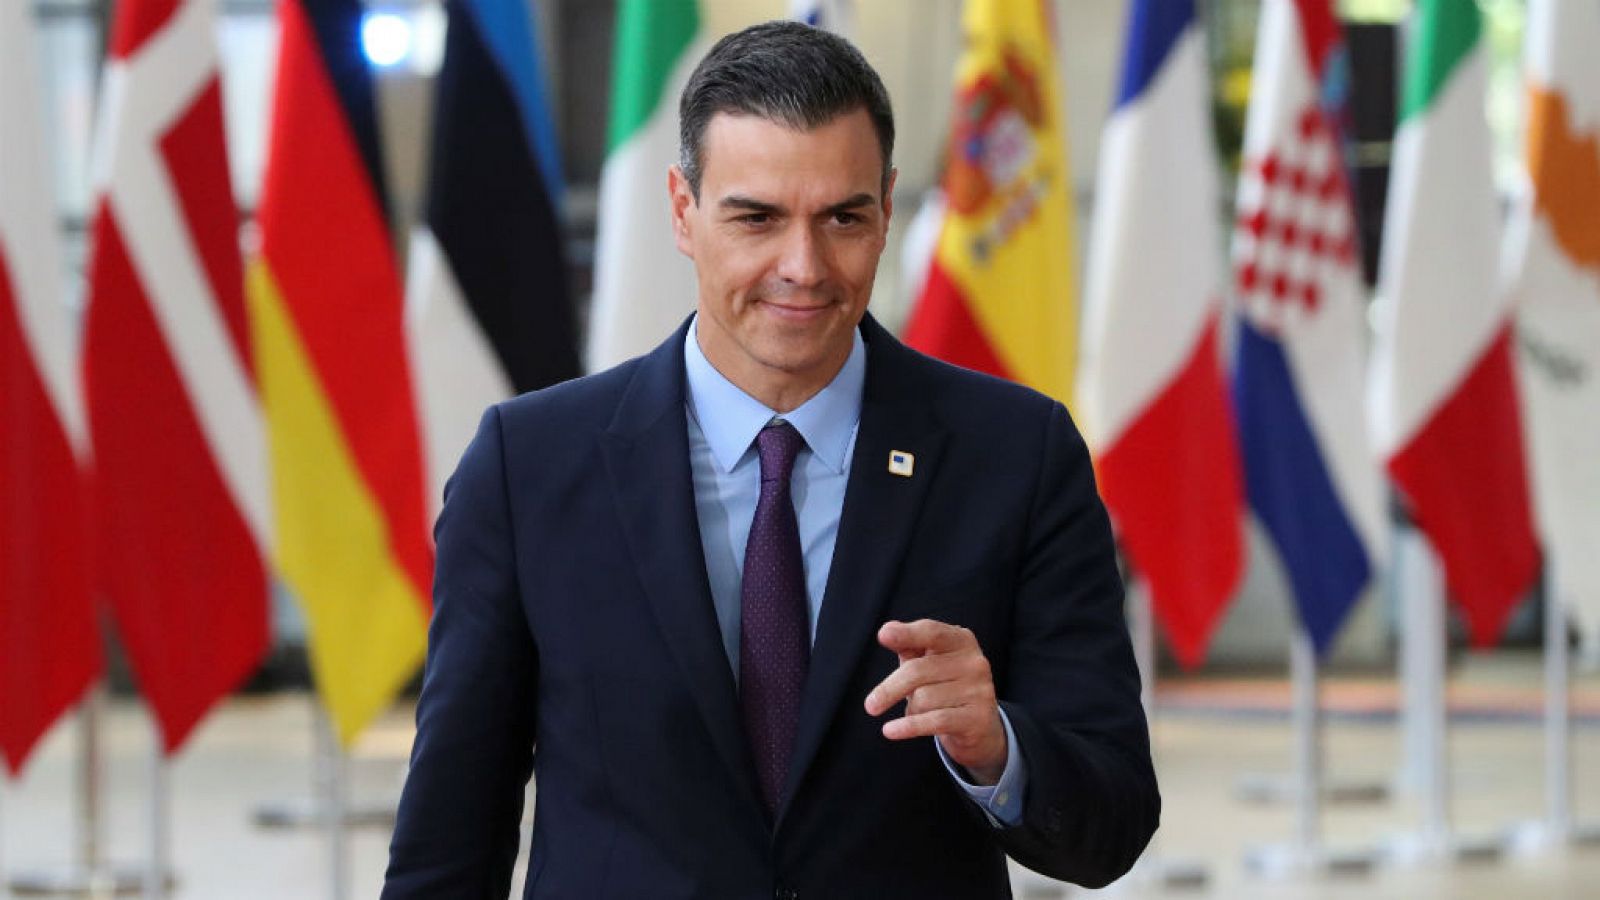  14 horas - Pedro Sánchez insiste, "no hay alternativas" a un gobierno del PSOE - escuchar ahora